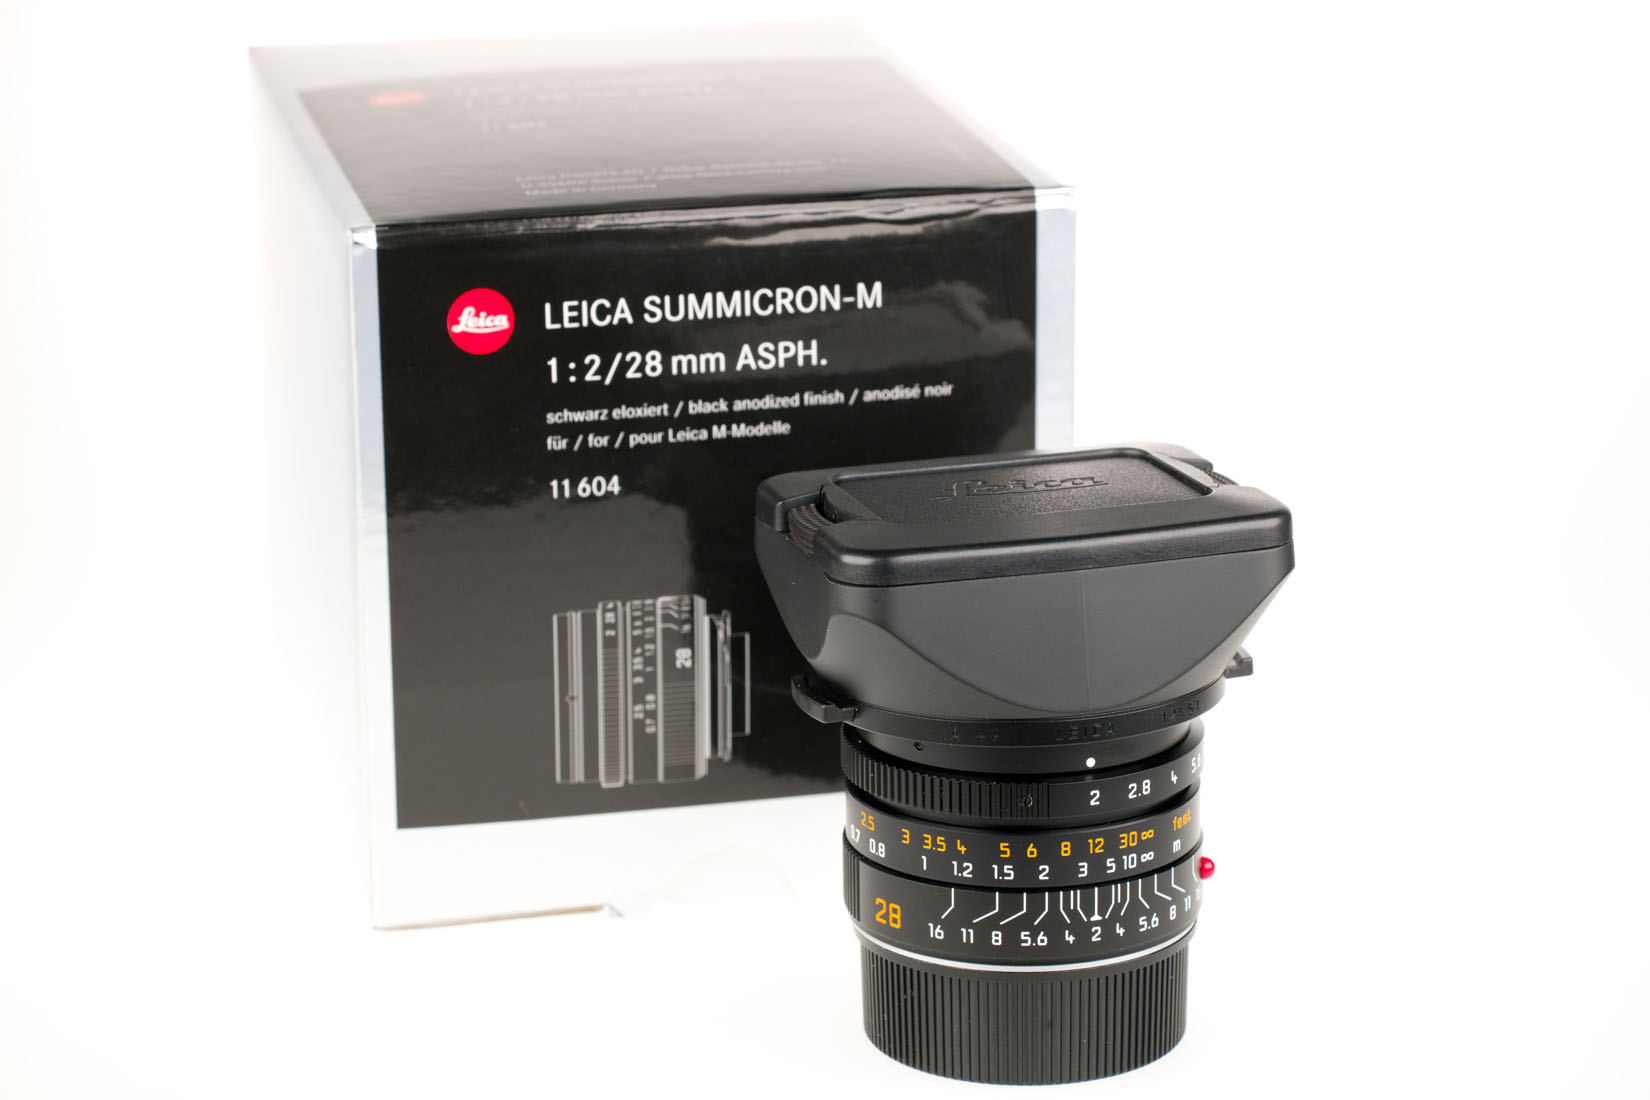 Leica Summicron-M 1:2/28mm ASPH. black 11604